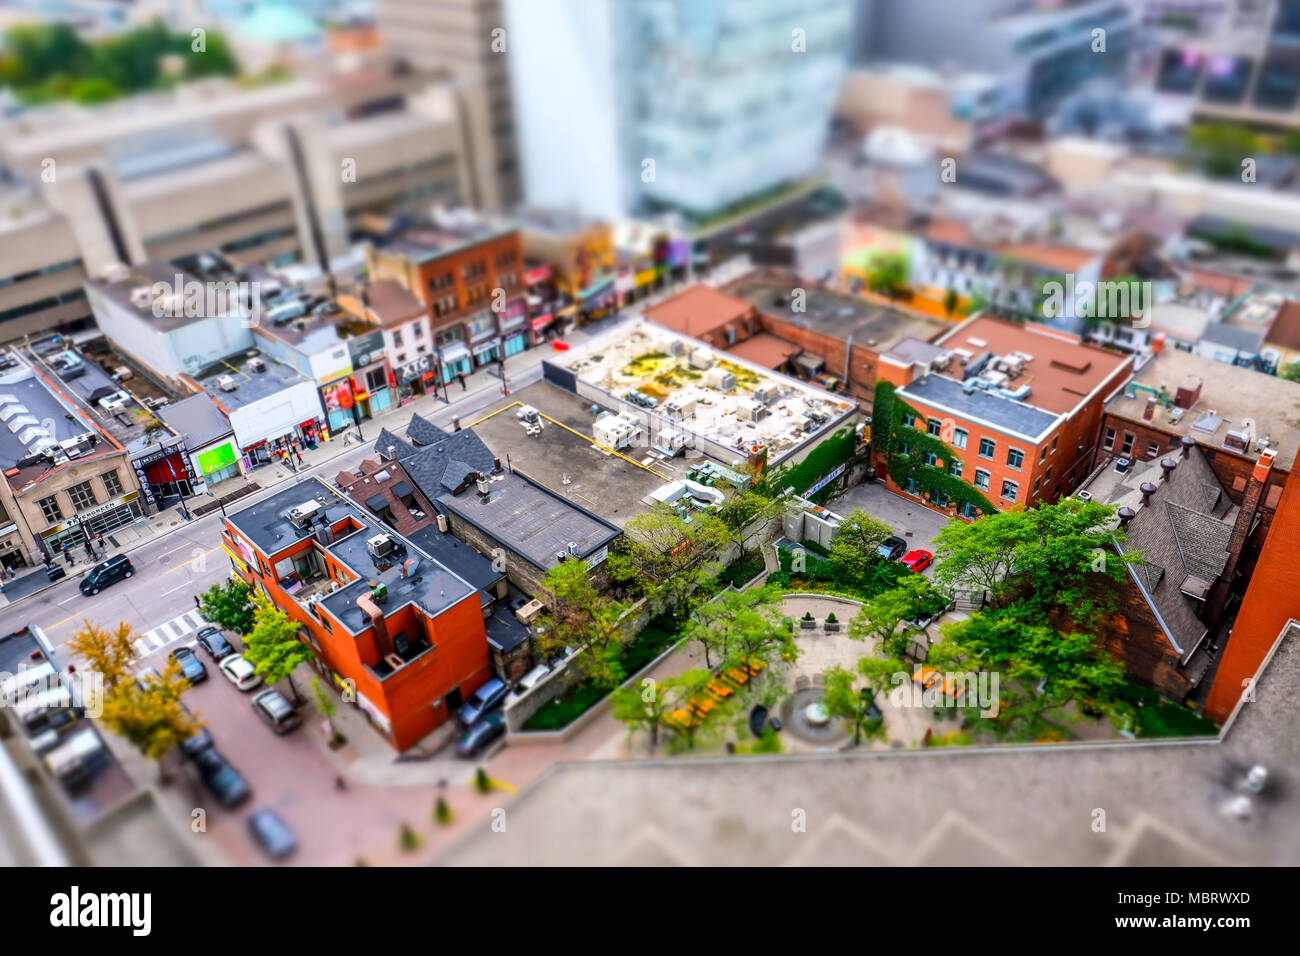 Interessante, diorama effetto miniatura dando dettagli al Toronto city centre, che mostra le strade e il moderno edificio universitario in background. Foto Stock